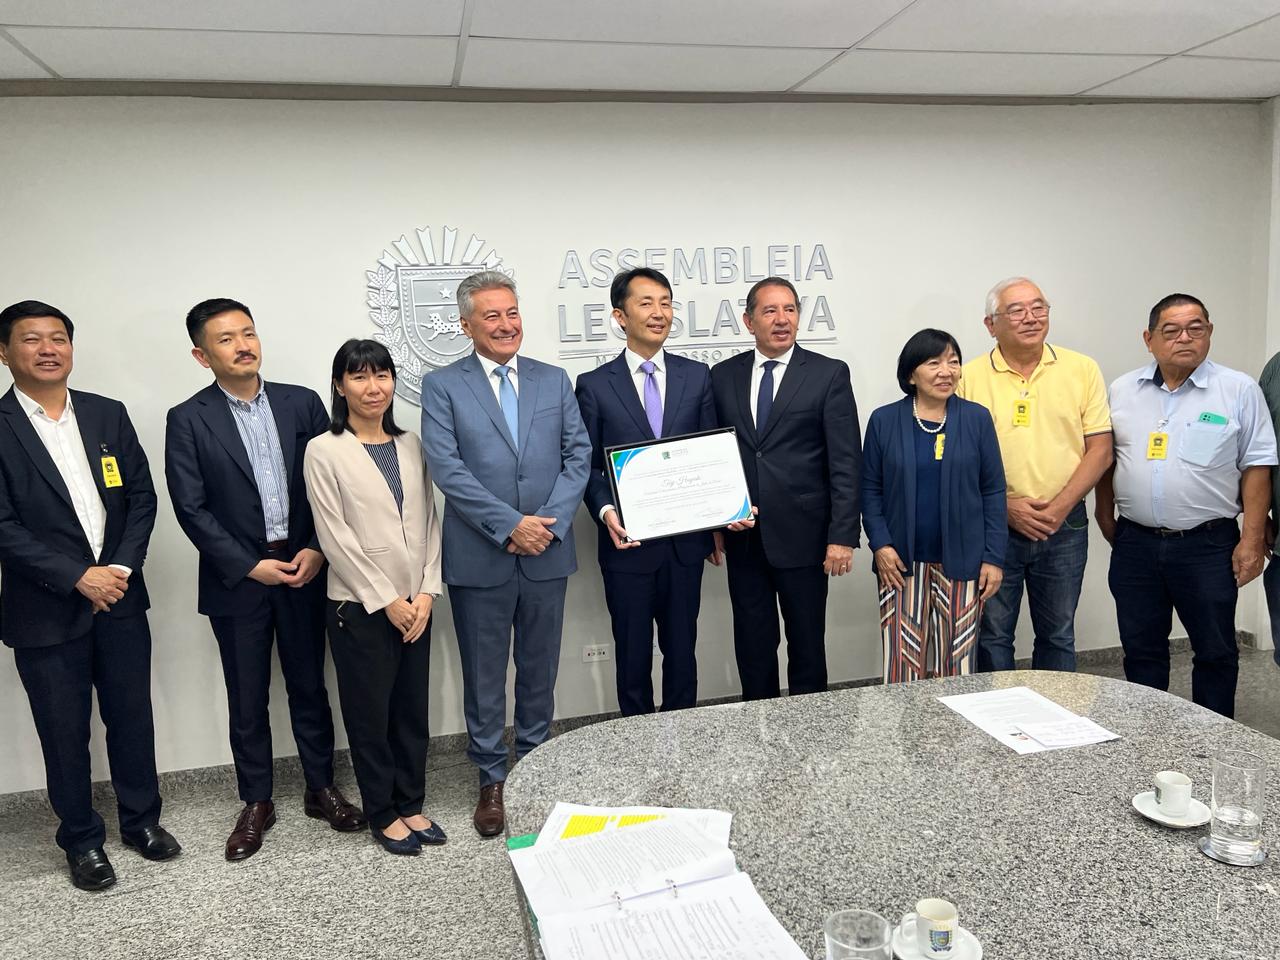 Deputado Hashioka entrega Diploma de Ilustre Visitante ao embaixador do Japão no Brasil